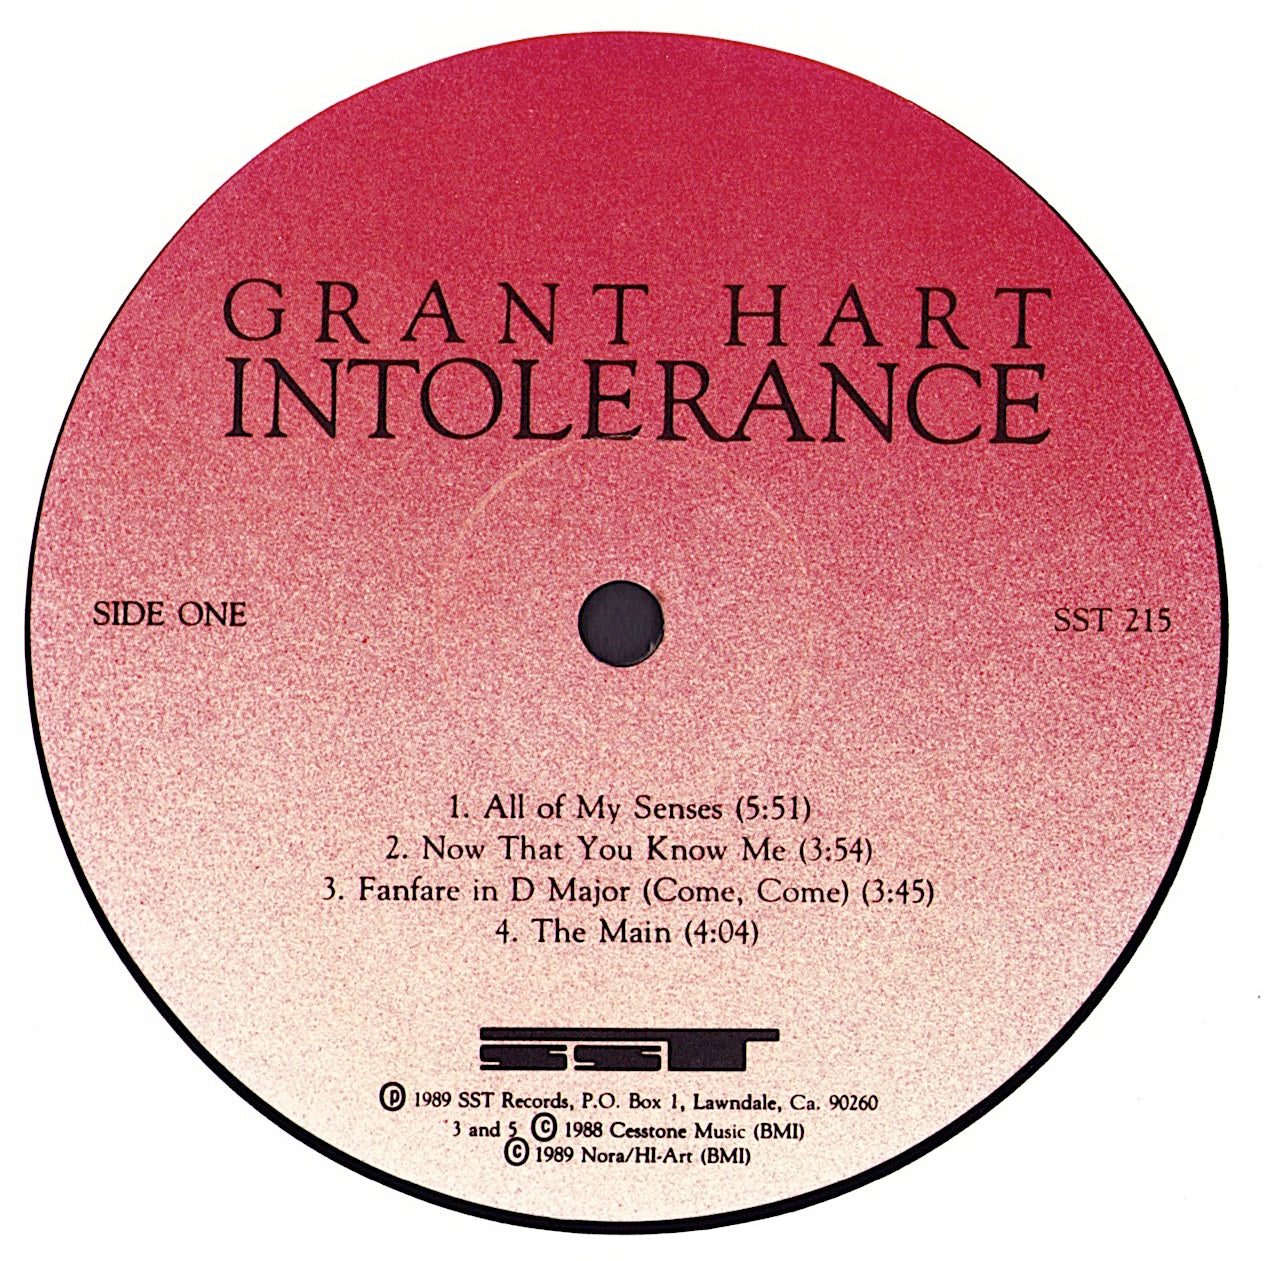 Grant Hart - Intolerance Vinyl LP